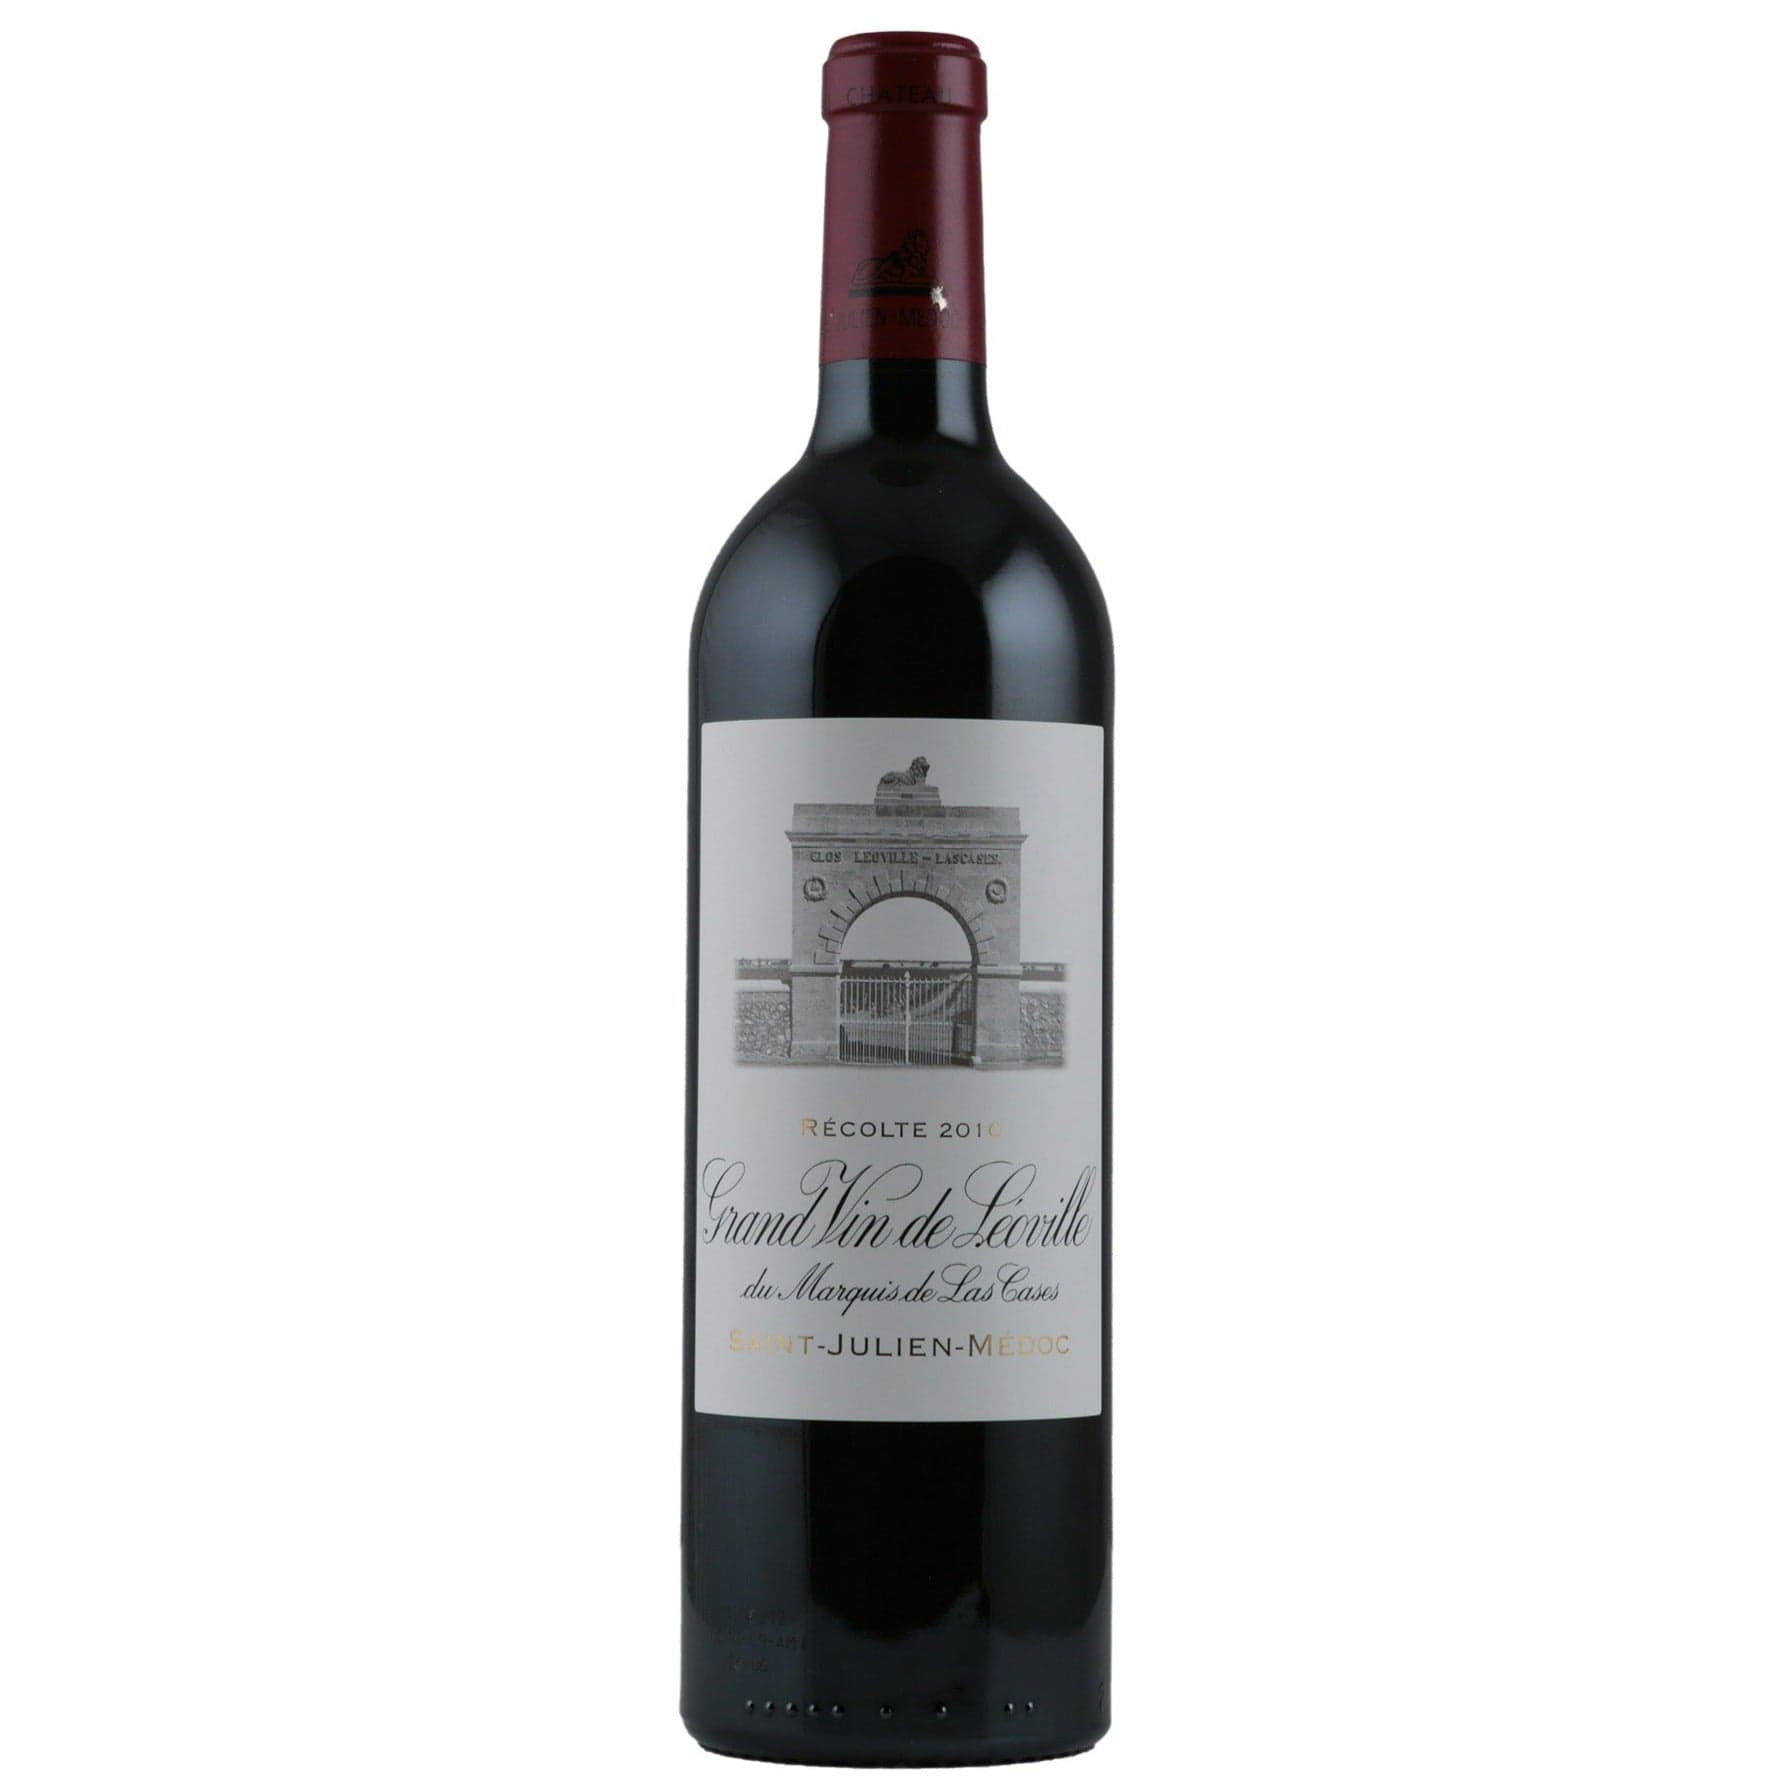 Single bottle of Red wine Ch. Leoville-Las Cases, 2nd Growth Grand Cru Classe, Saint-Julien, 2010 82% Cabernet Sauvignon, 10% Merlot & 8% Cabernet Franc